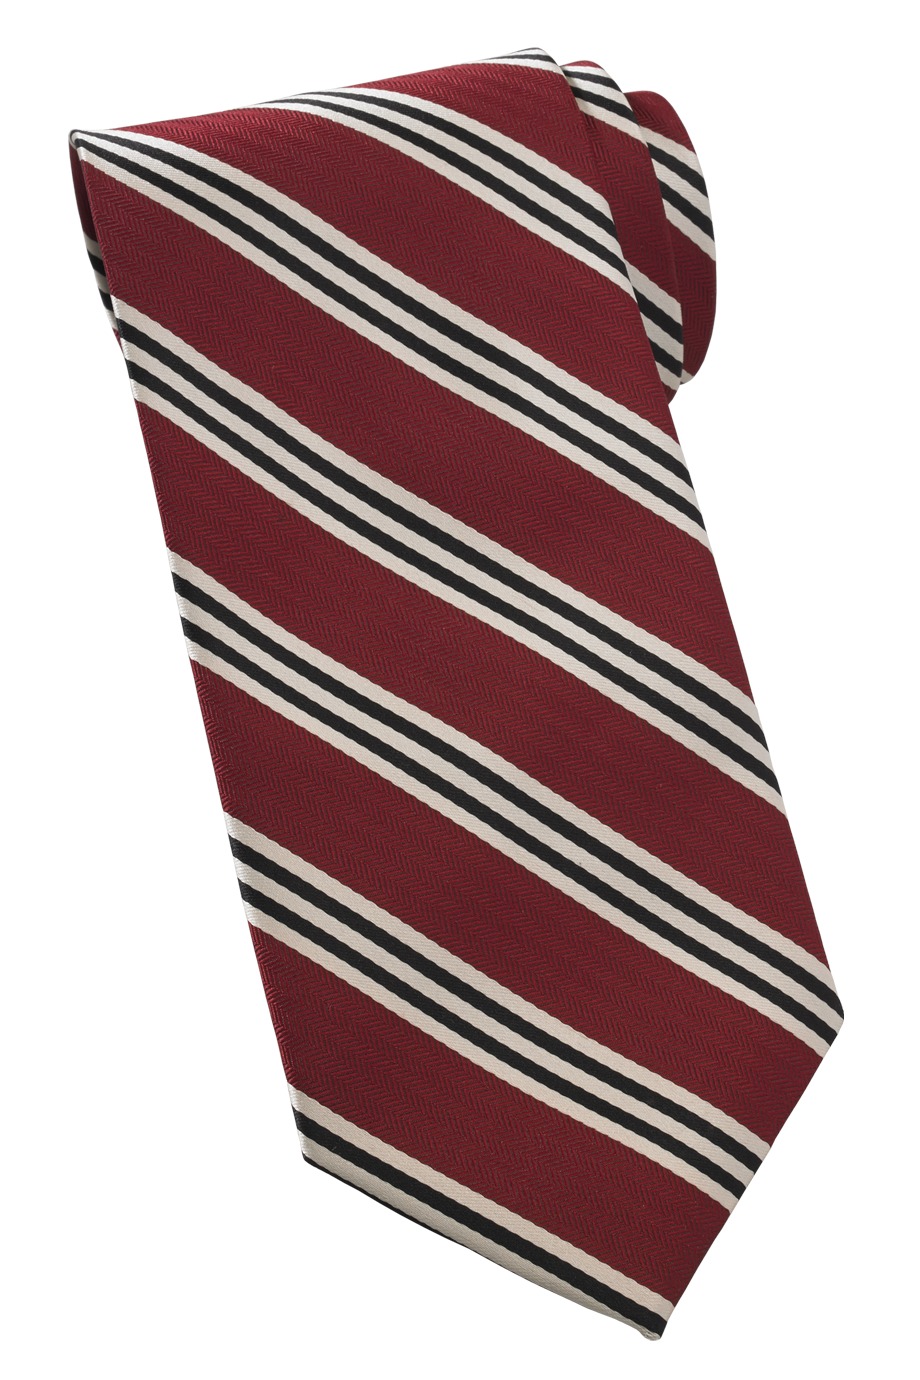 Edwards Garment QS00 - Quint Stripe Tie